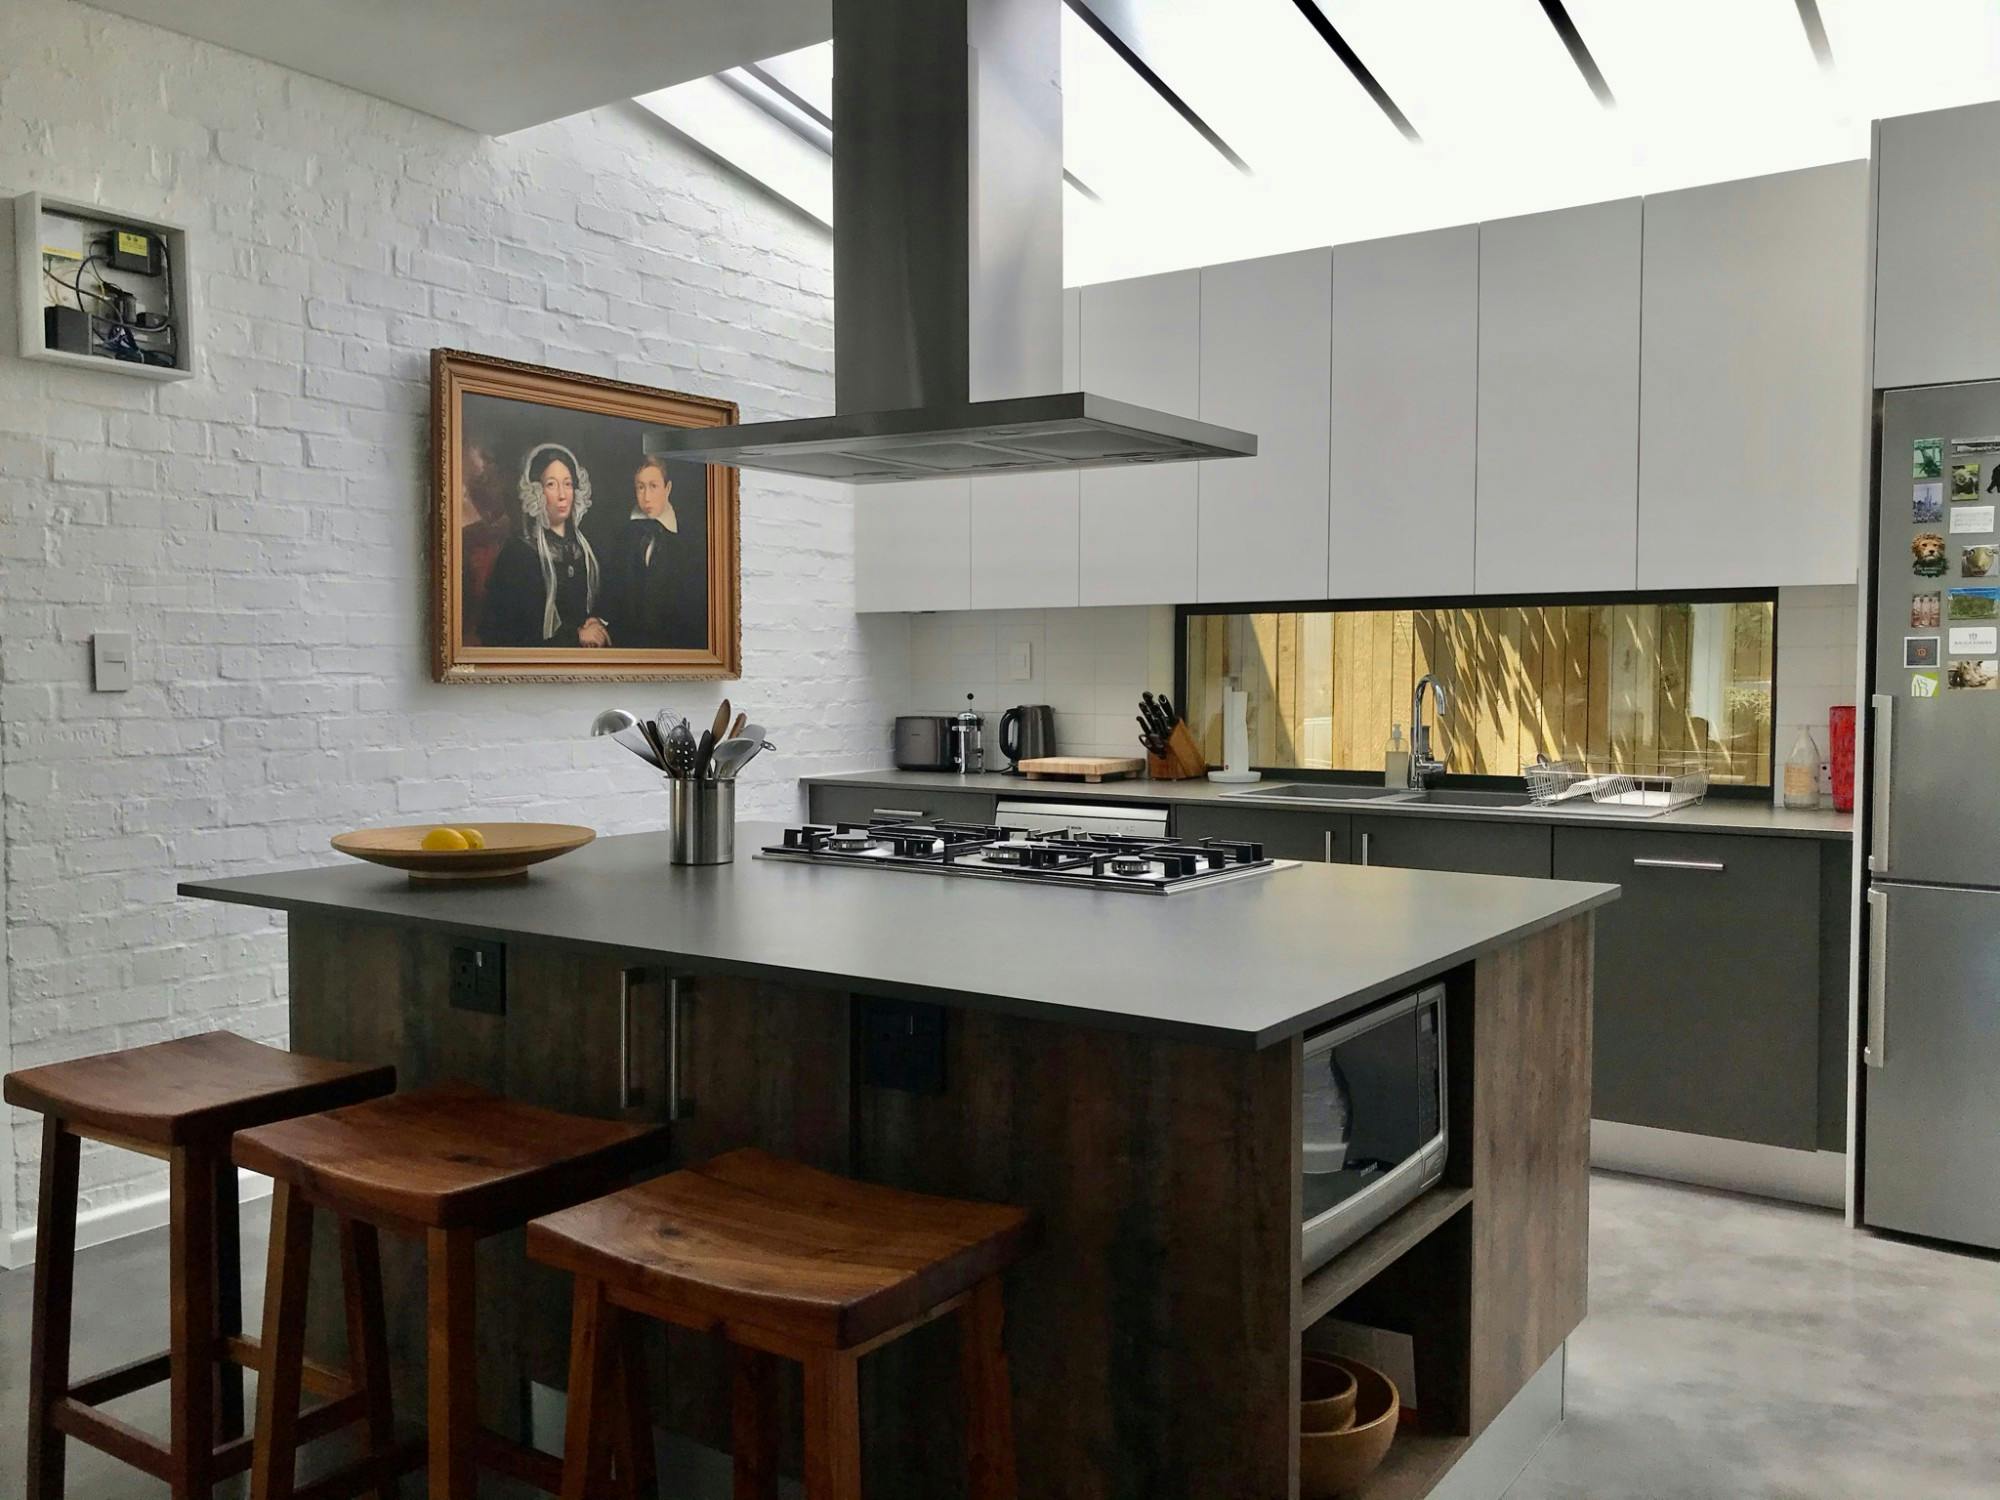 Numero immagine 45 della sezione corrente di DKTN design and functionality for an open kitchen  di Cosentino Italia